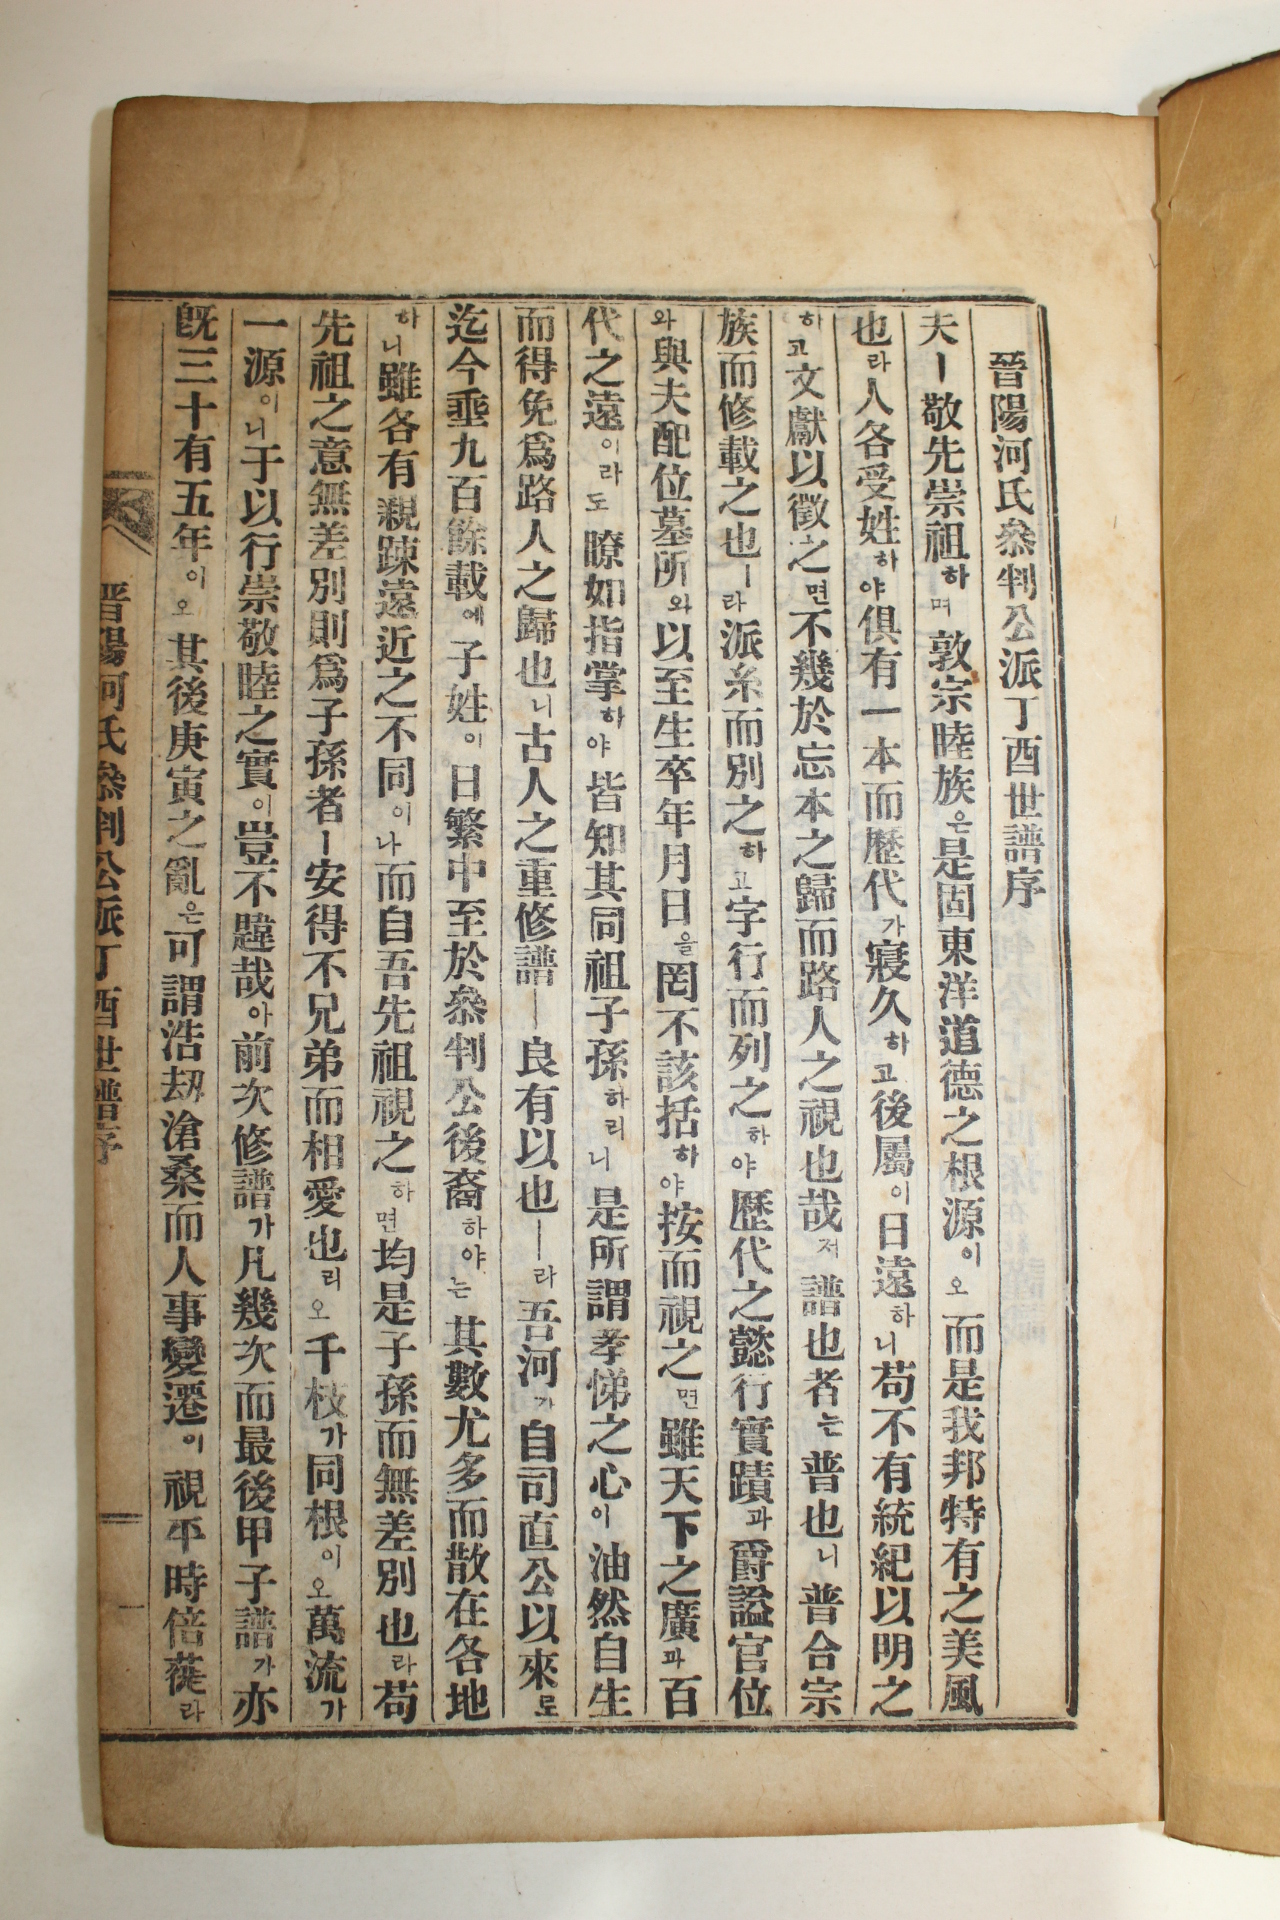 1957년 연활자본 진양하씨참판공파보(晋陽河氏參判公派譜) 9책